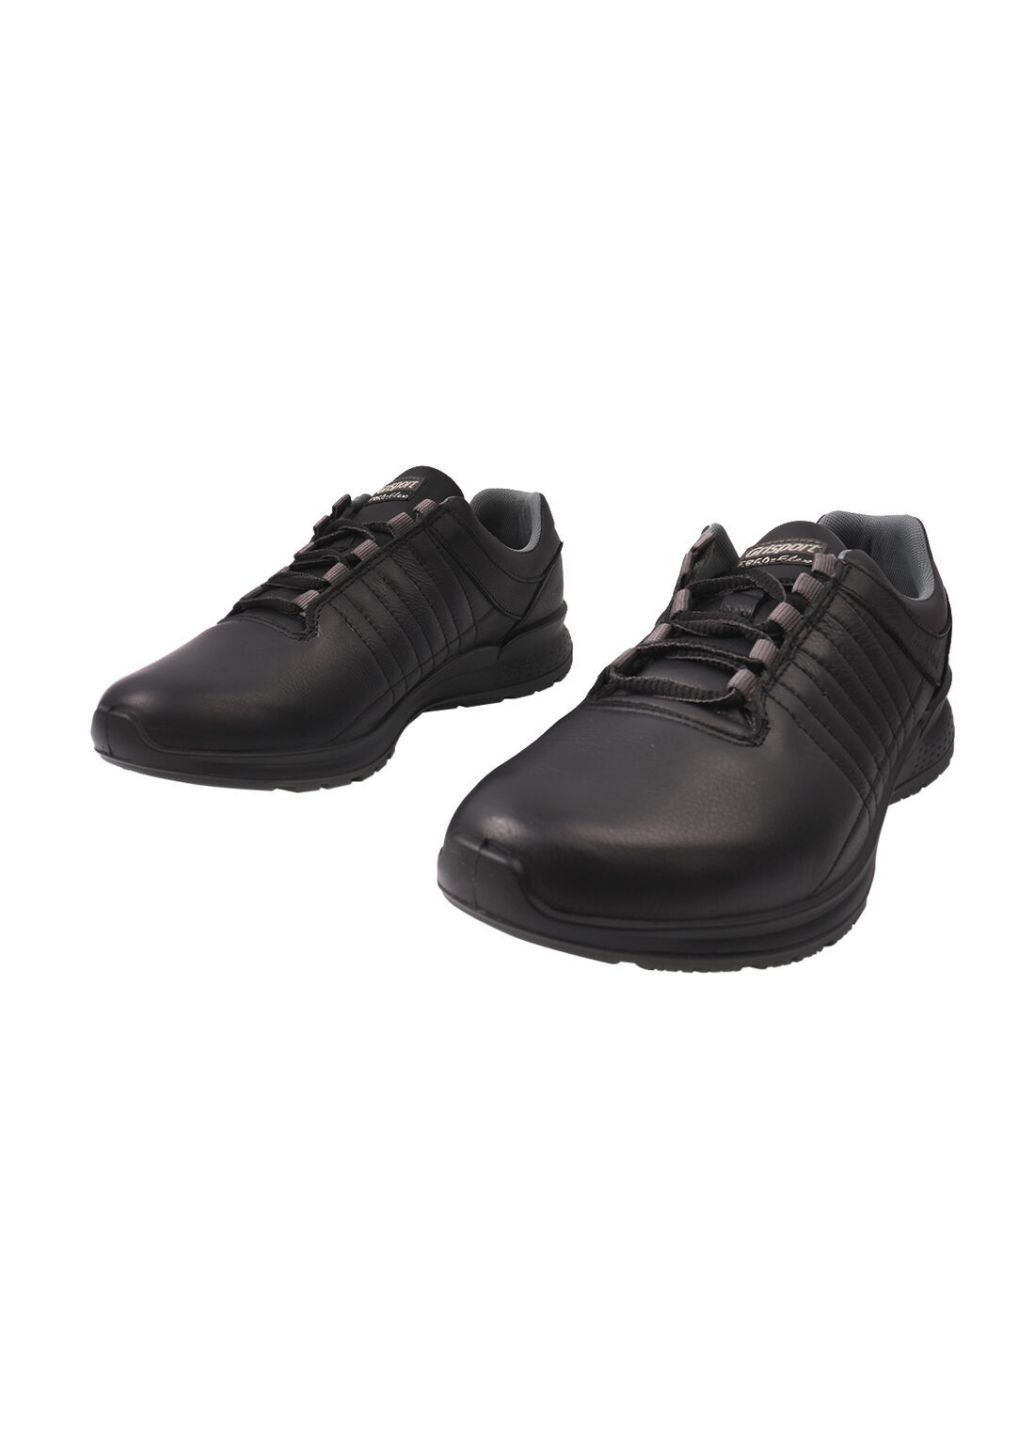 Черные туфли спорт мужские из натуральной кожи, на низком ходу, на шнуровке, черные, италия gri sport Grisport 82-20/24DTS